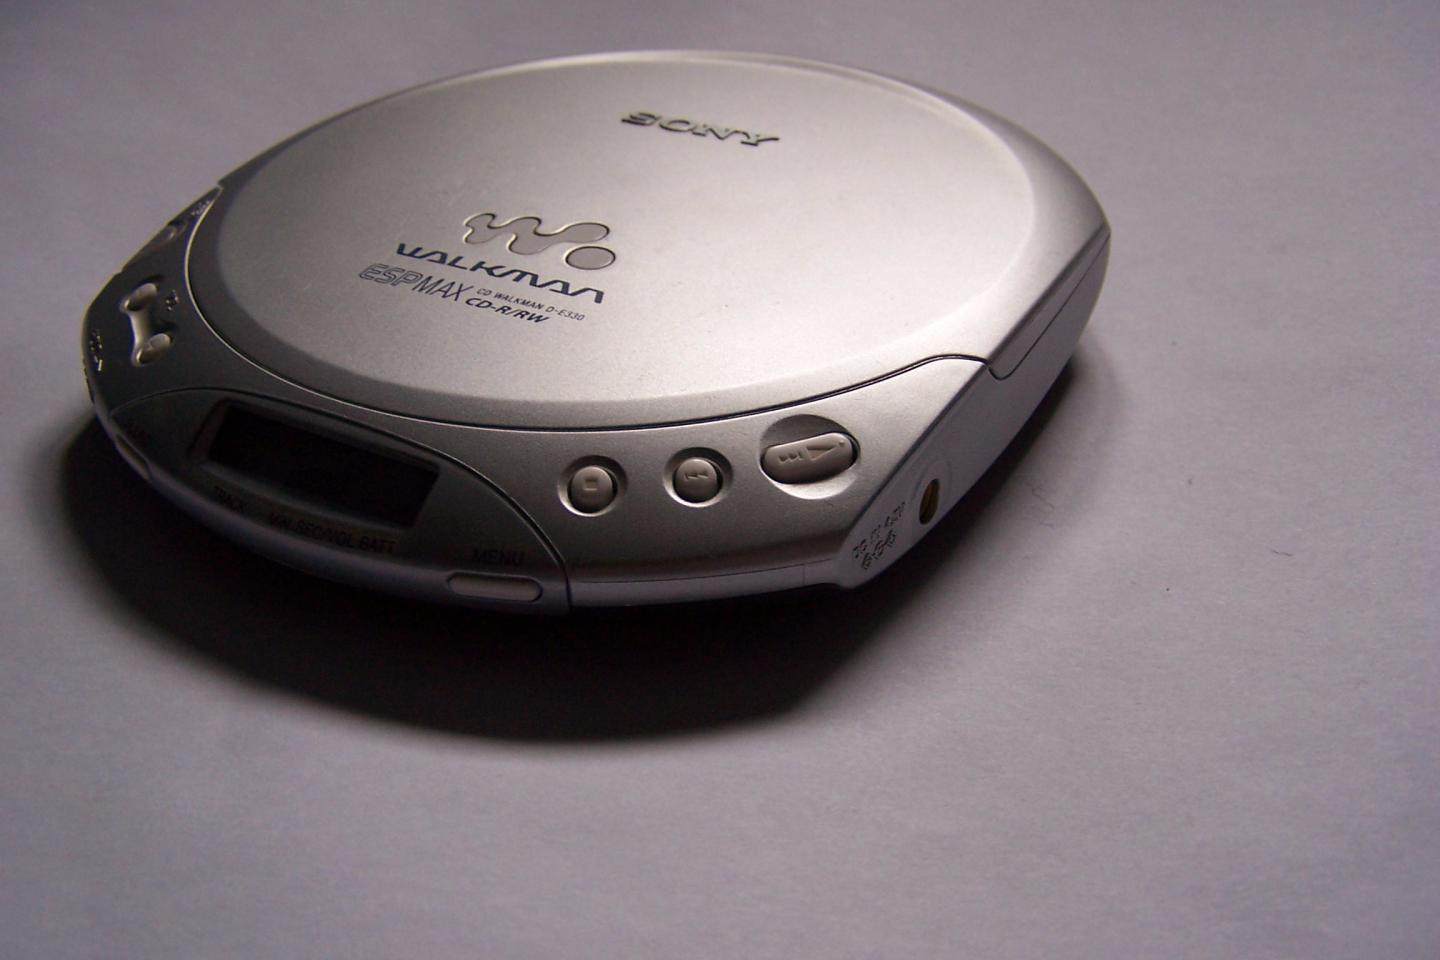 Se cumplen 40 años de música con Walkman; así ha sido su evolución